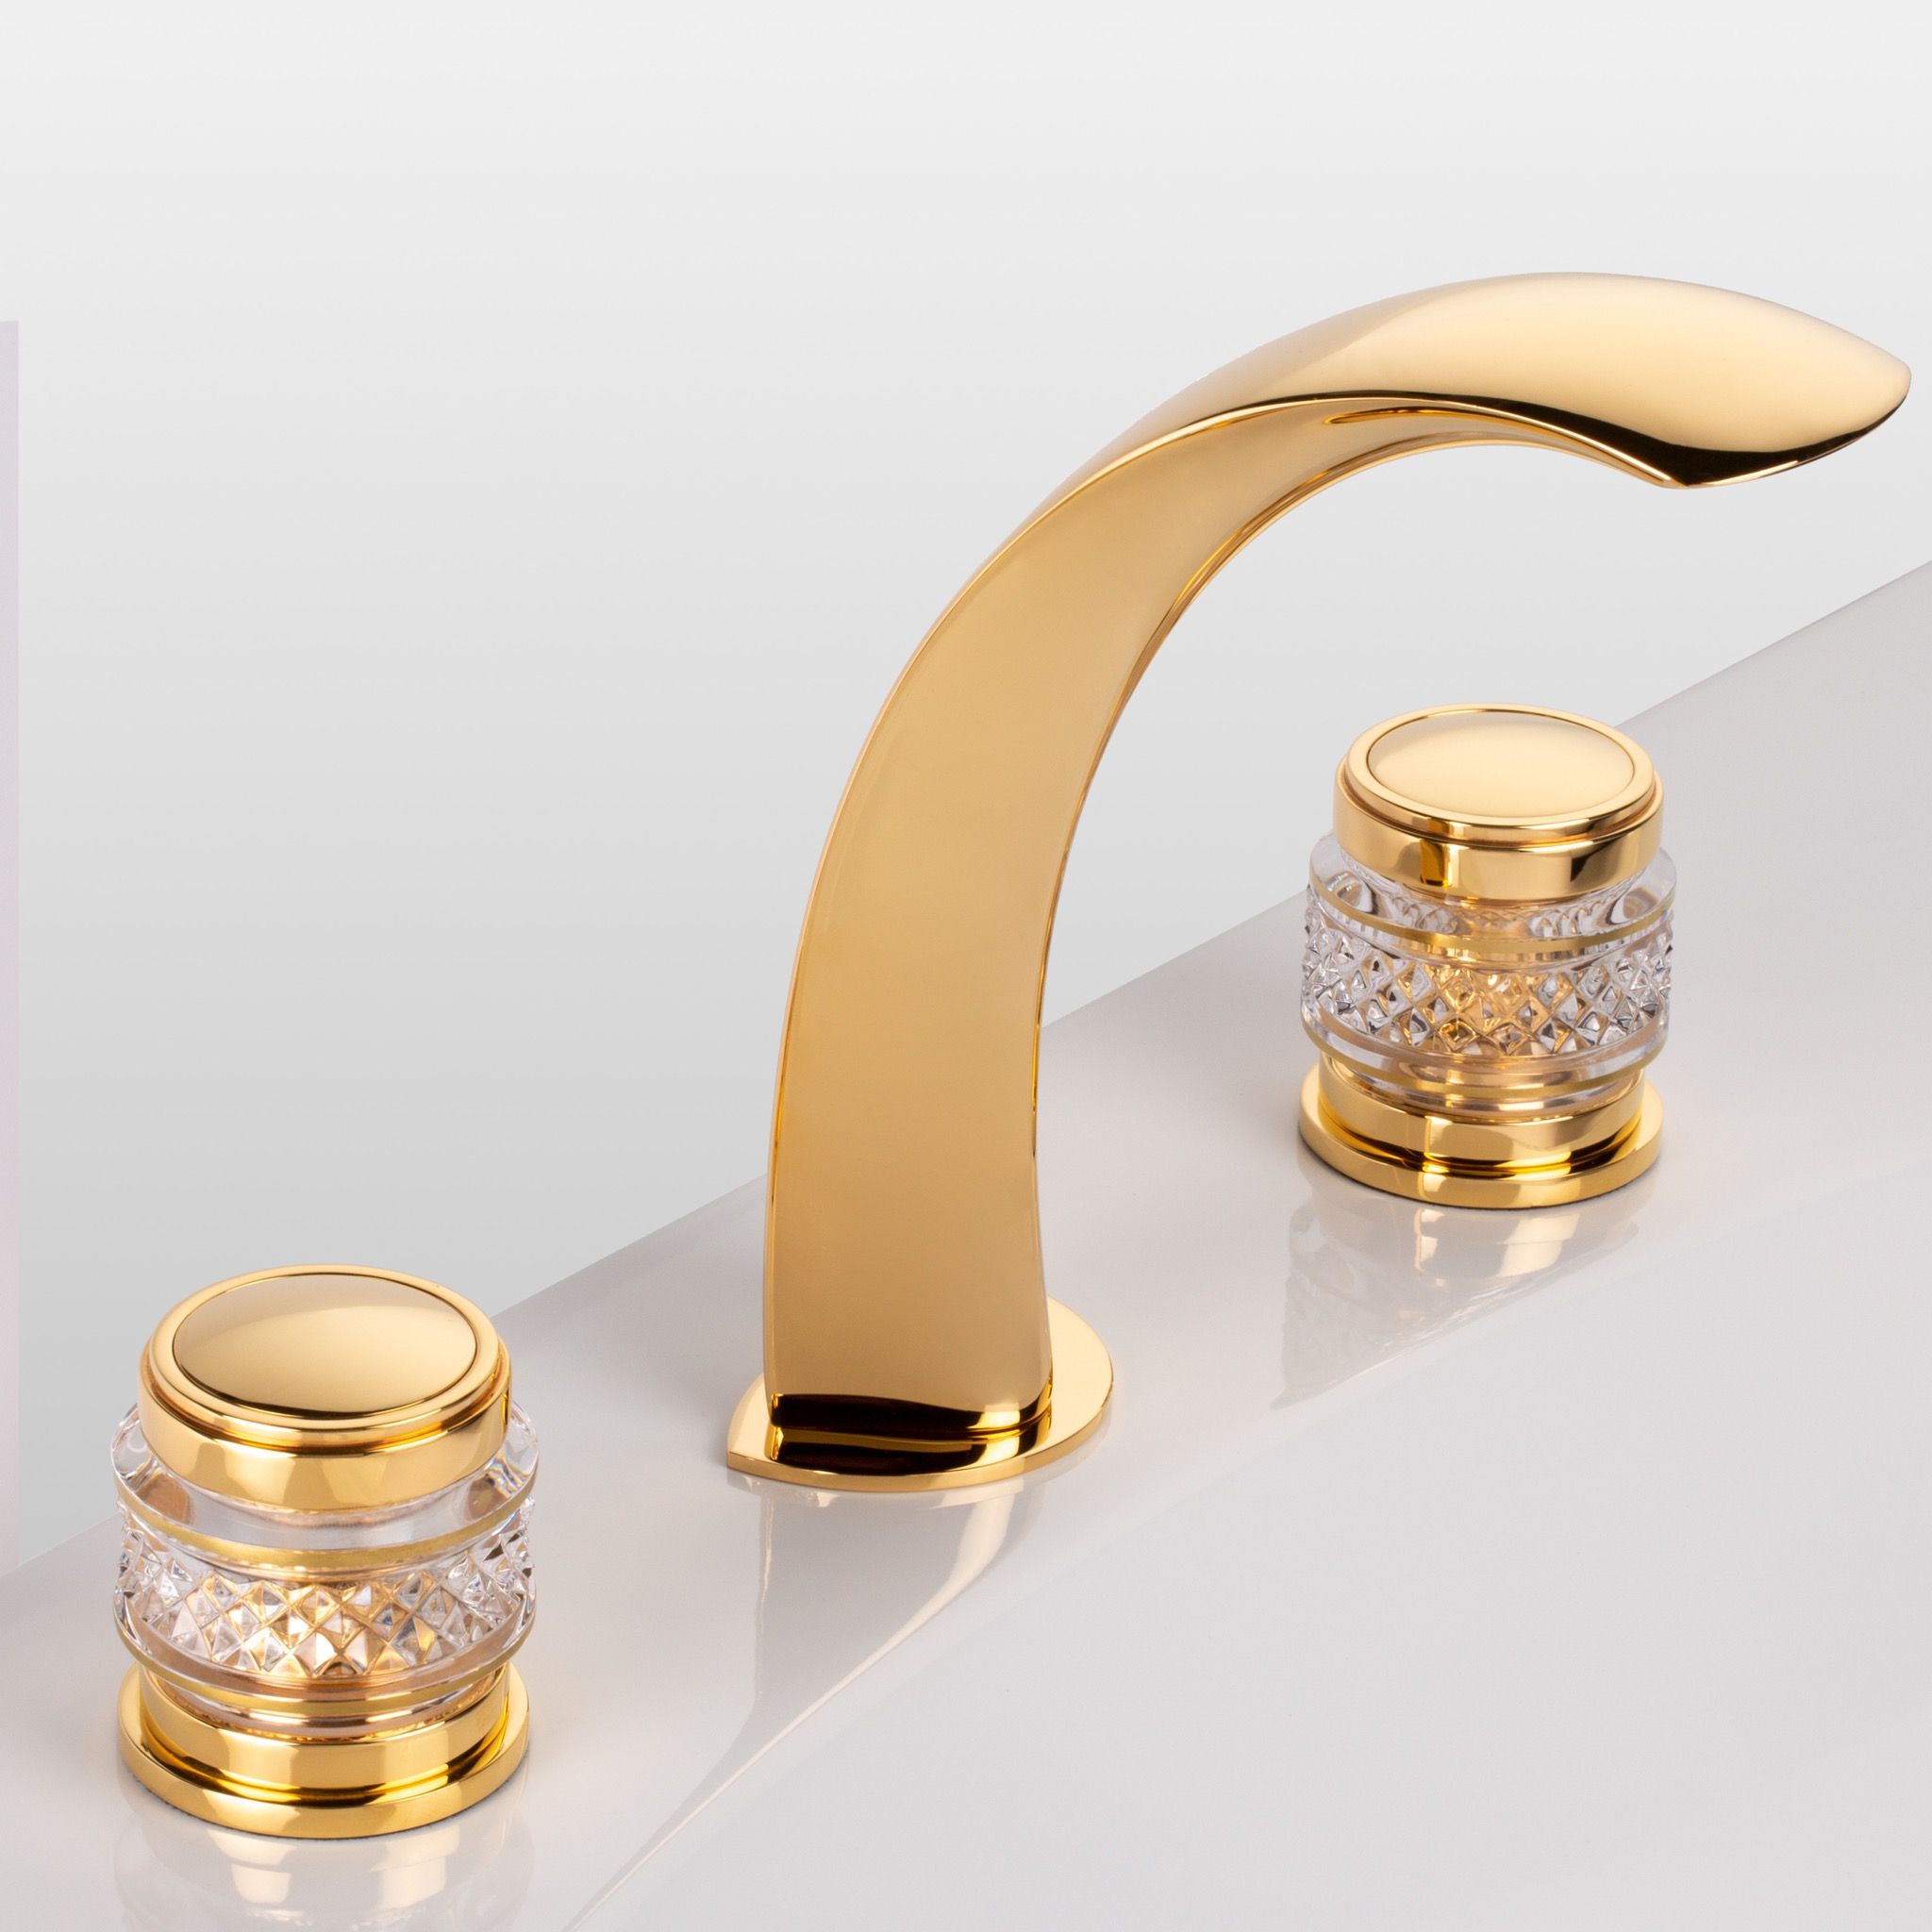  Vòi chậu rửa mặt cổ điển Quadrille polished gold - 1301 